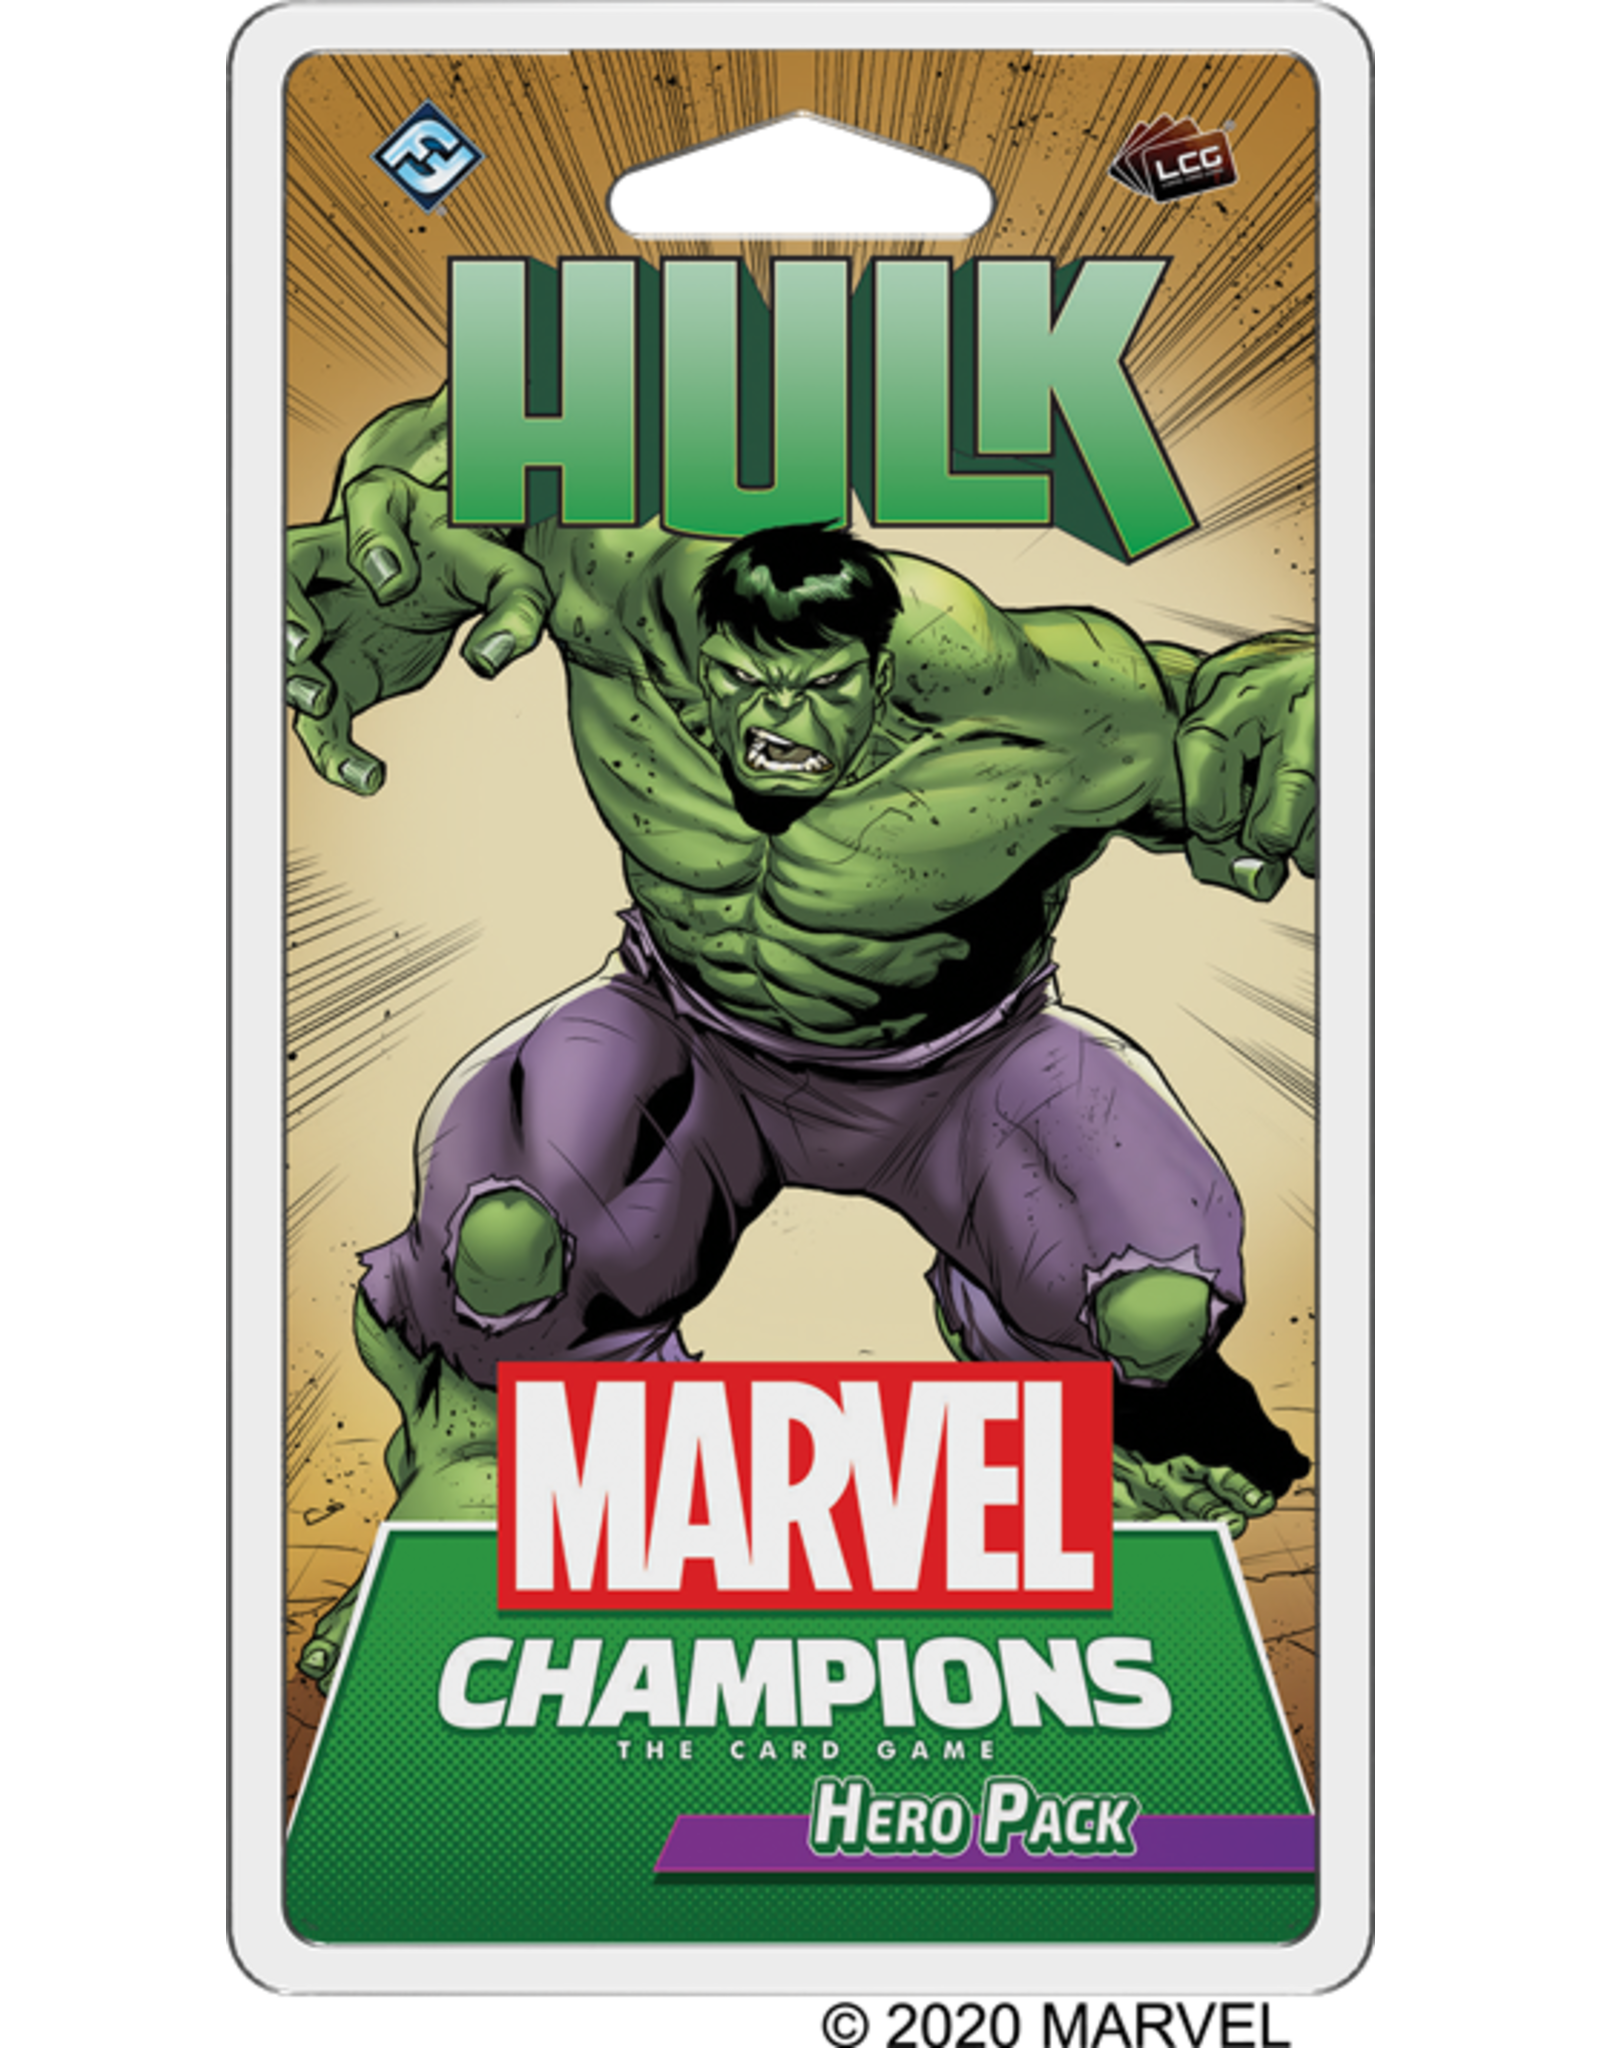 Marvel Champions Hero Pack HULK